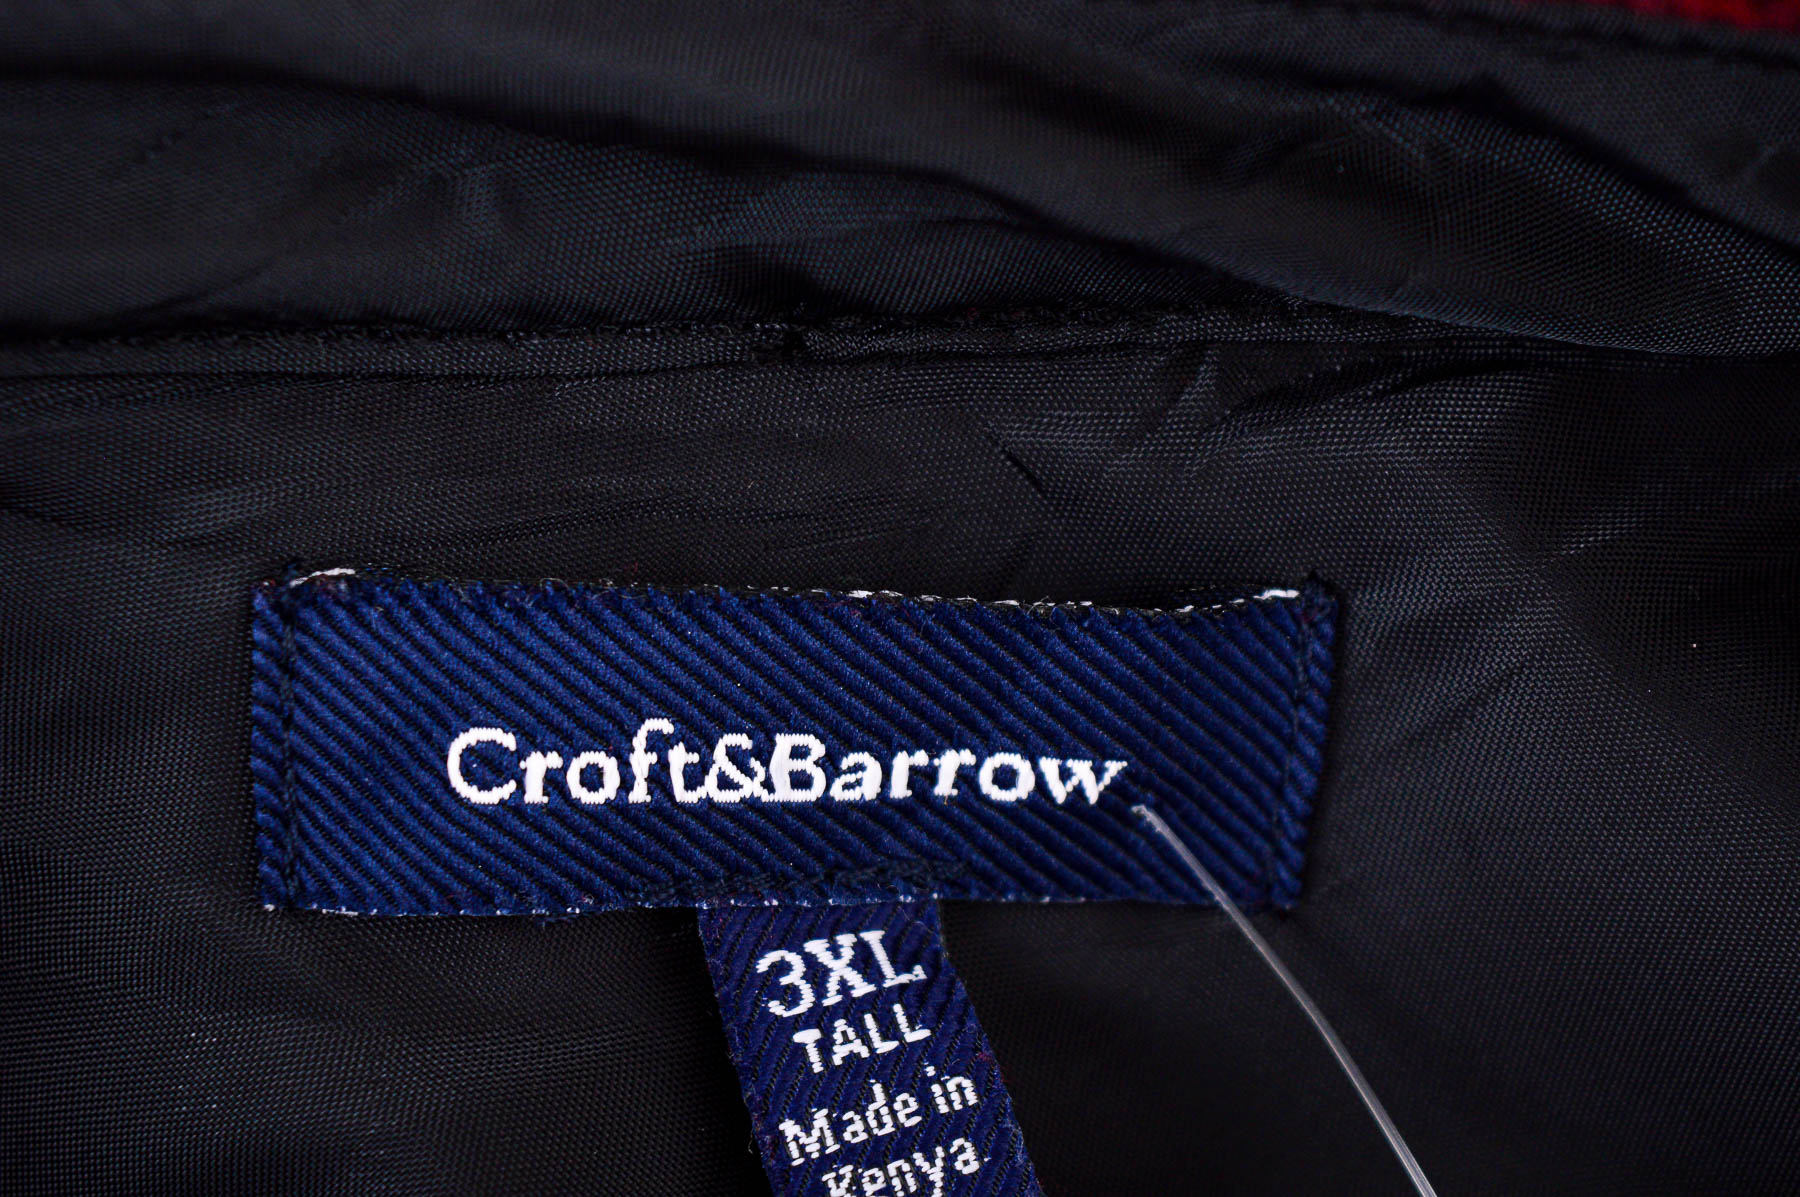 Ανδρικό ρούχο απο πολικό υφασμα - Croft & Barrow - 2